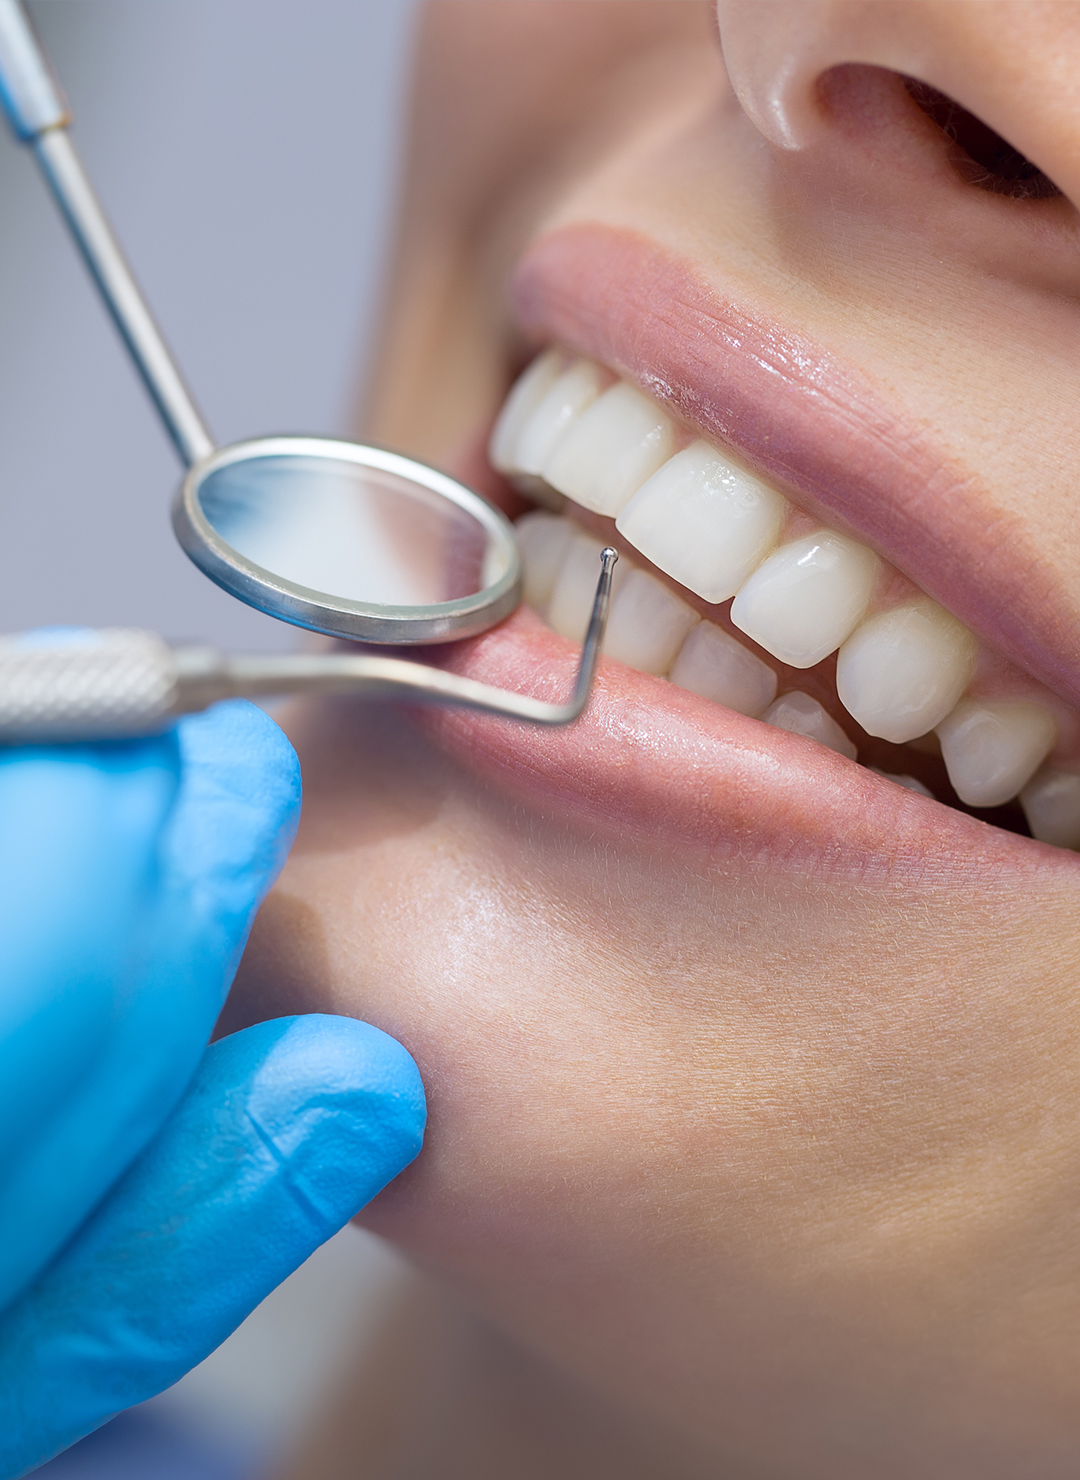 stomatolog-dentysta-ortodonyta-medycyna-estetyczna-gora-kalwaria